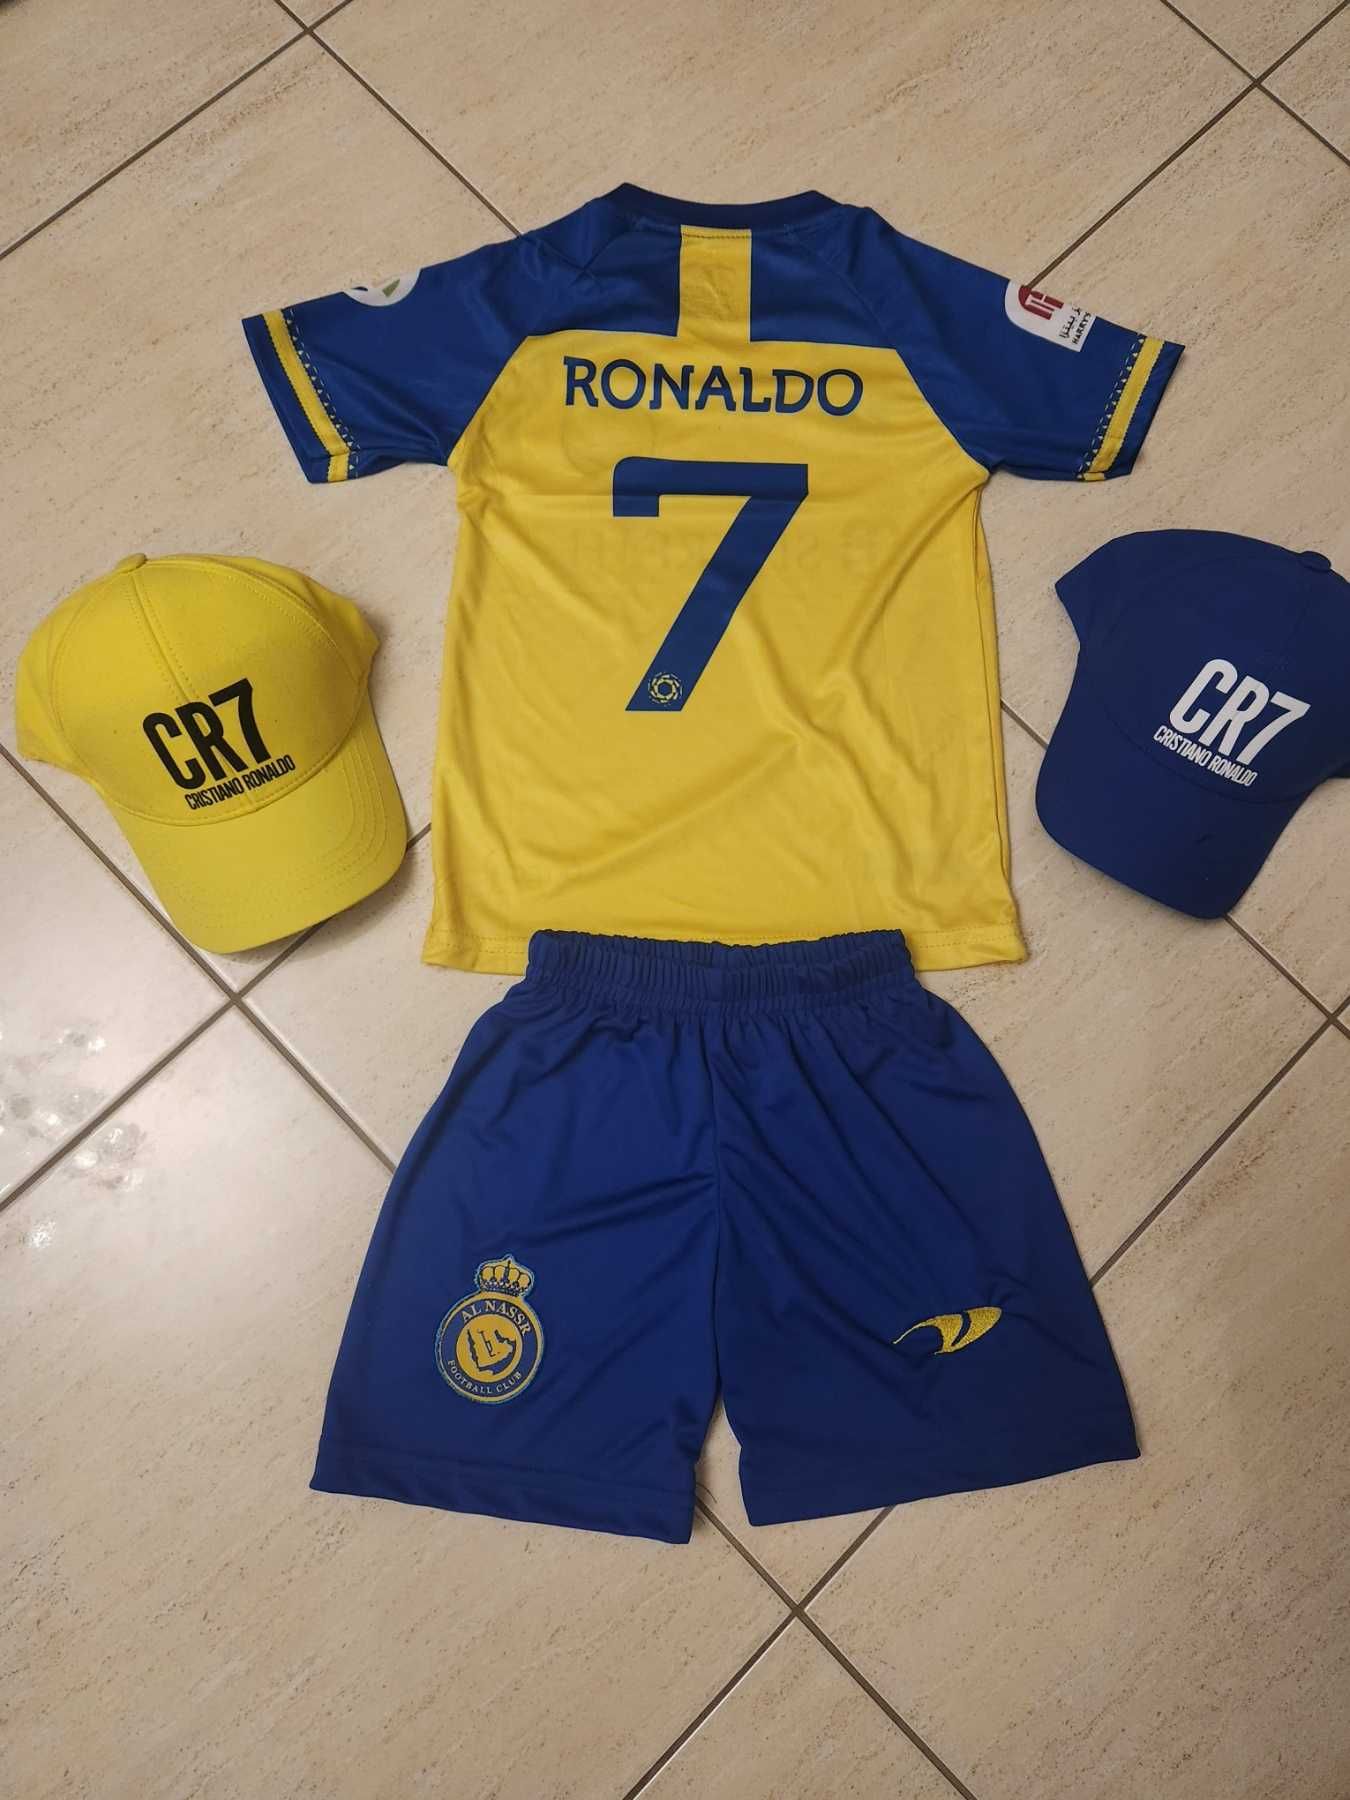 Фенски Шапки CR7 Ronaldo Три цвята, Меси, Неймар. Мбапе/ Messi/Mbappe